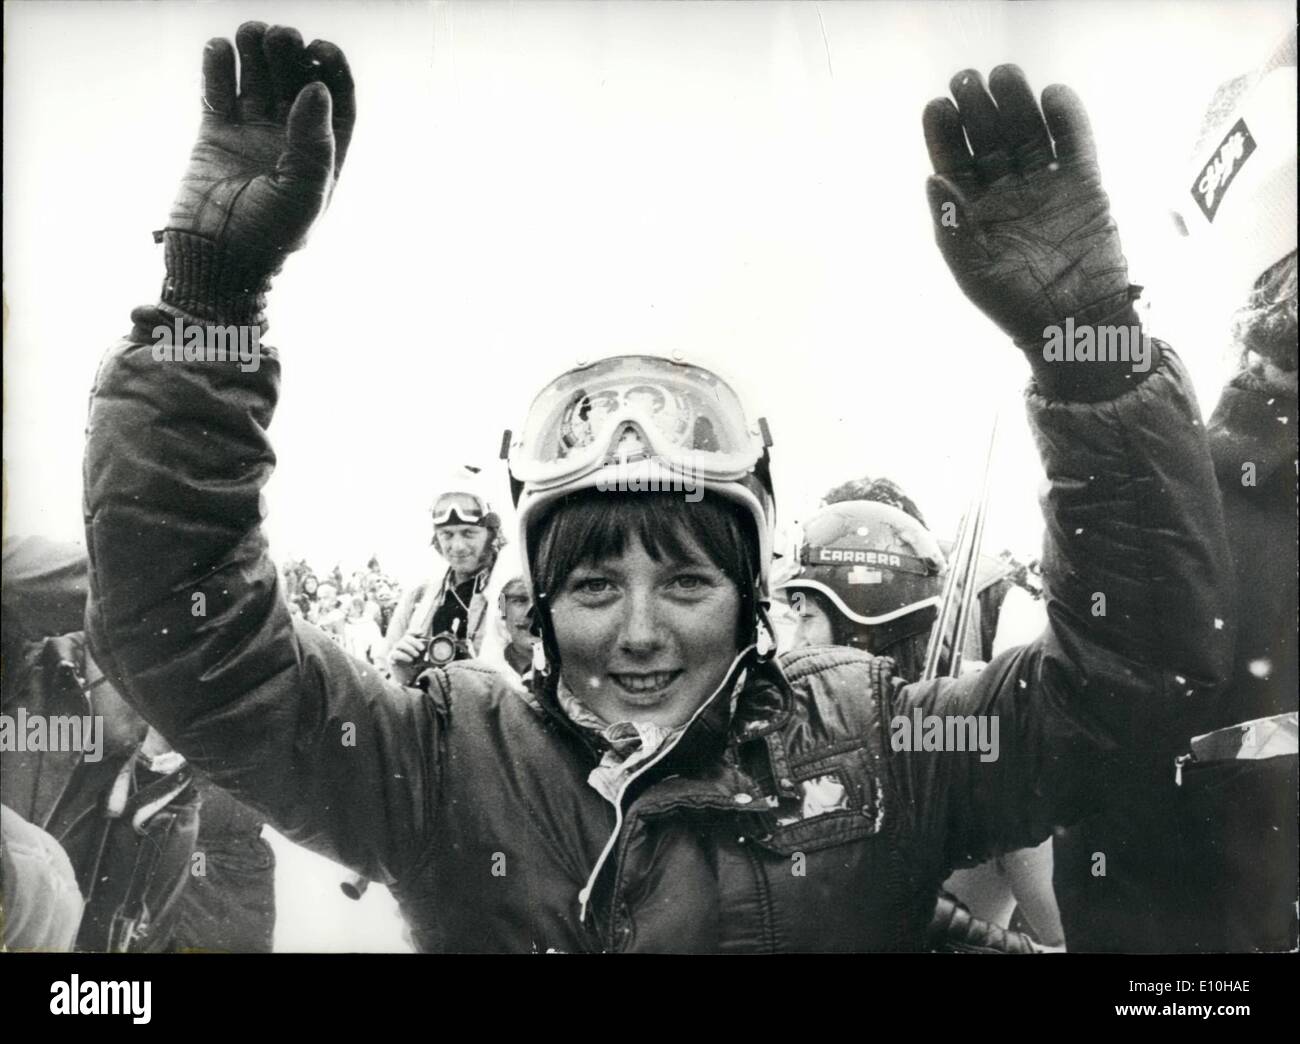 02 febbraio 1973 - Anne-Marie Proell si presenta come la migliore sciatrice downhill femminile di sempre: Anne-Marie Proell, 19 anni, d'Austria, si è mostrata come possibilmente la migliore sciatrice da discesa mai realizzata, e ha registrato un record a St. Moritz nel week-end che non può essere tra oggi. La sua vittoria nella ''band bianca'' è stata Herc ottavo nelle otto discese mondiali della stagione e si può difficilmente per più di vincere tutti.Phot mostra UNA felicissima Anne-Marie Proell dopo la sua ottava vittoria in discesa a St. Moritz lo scorso week-end Foto Stock